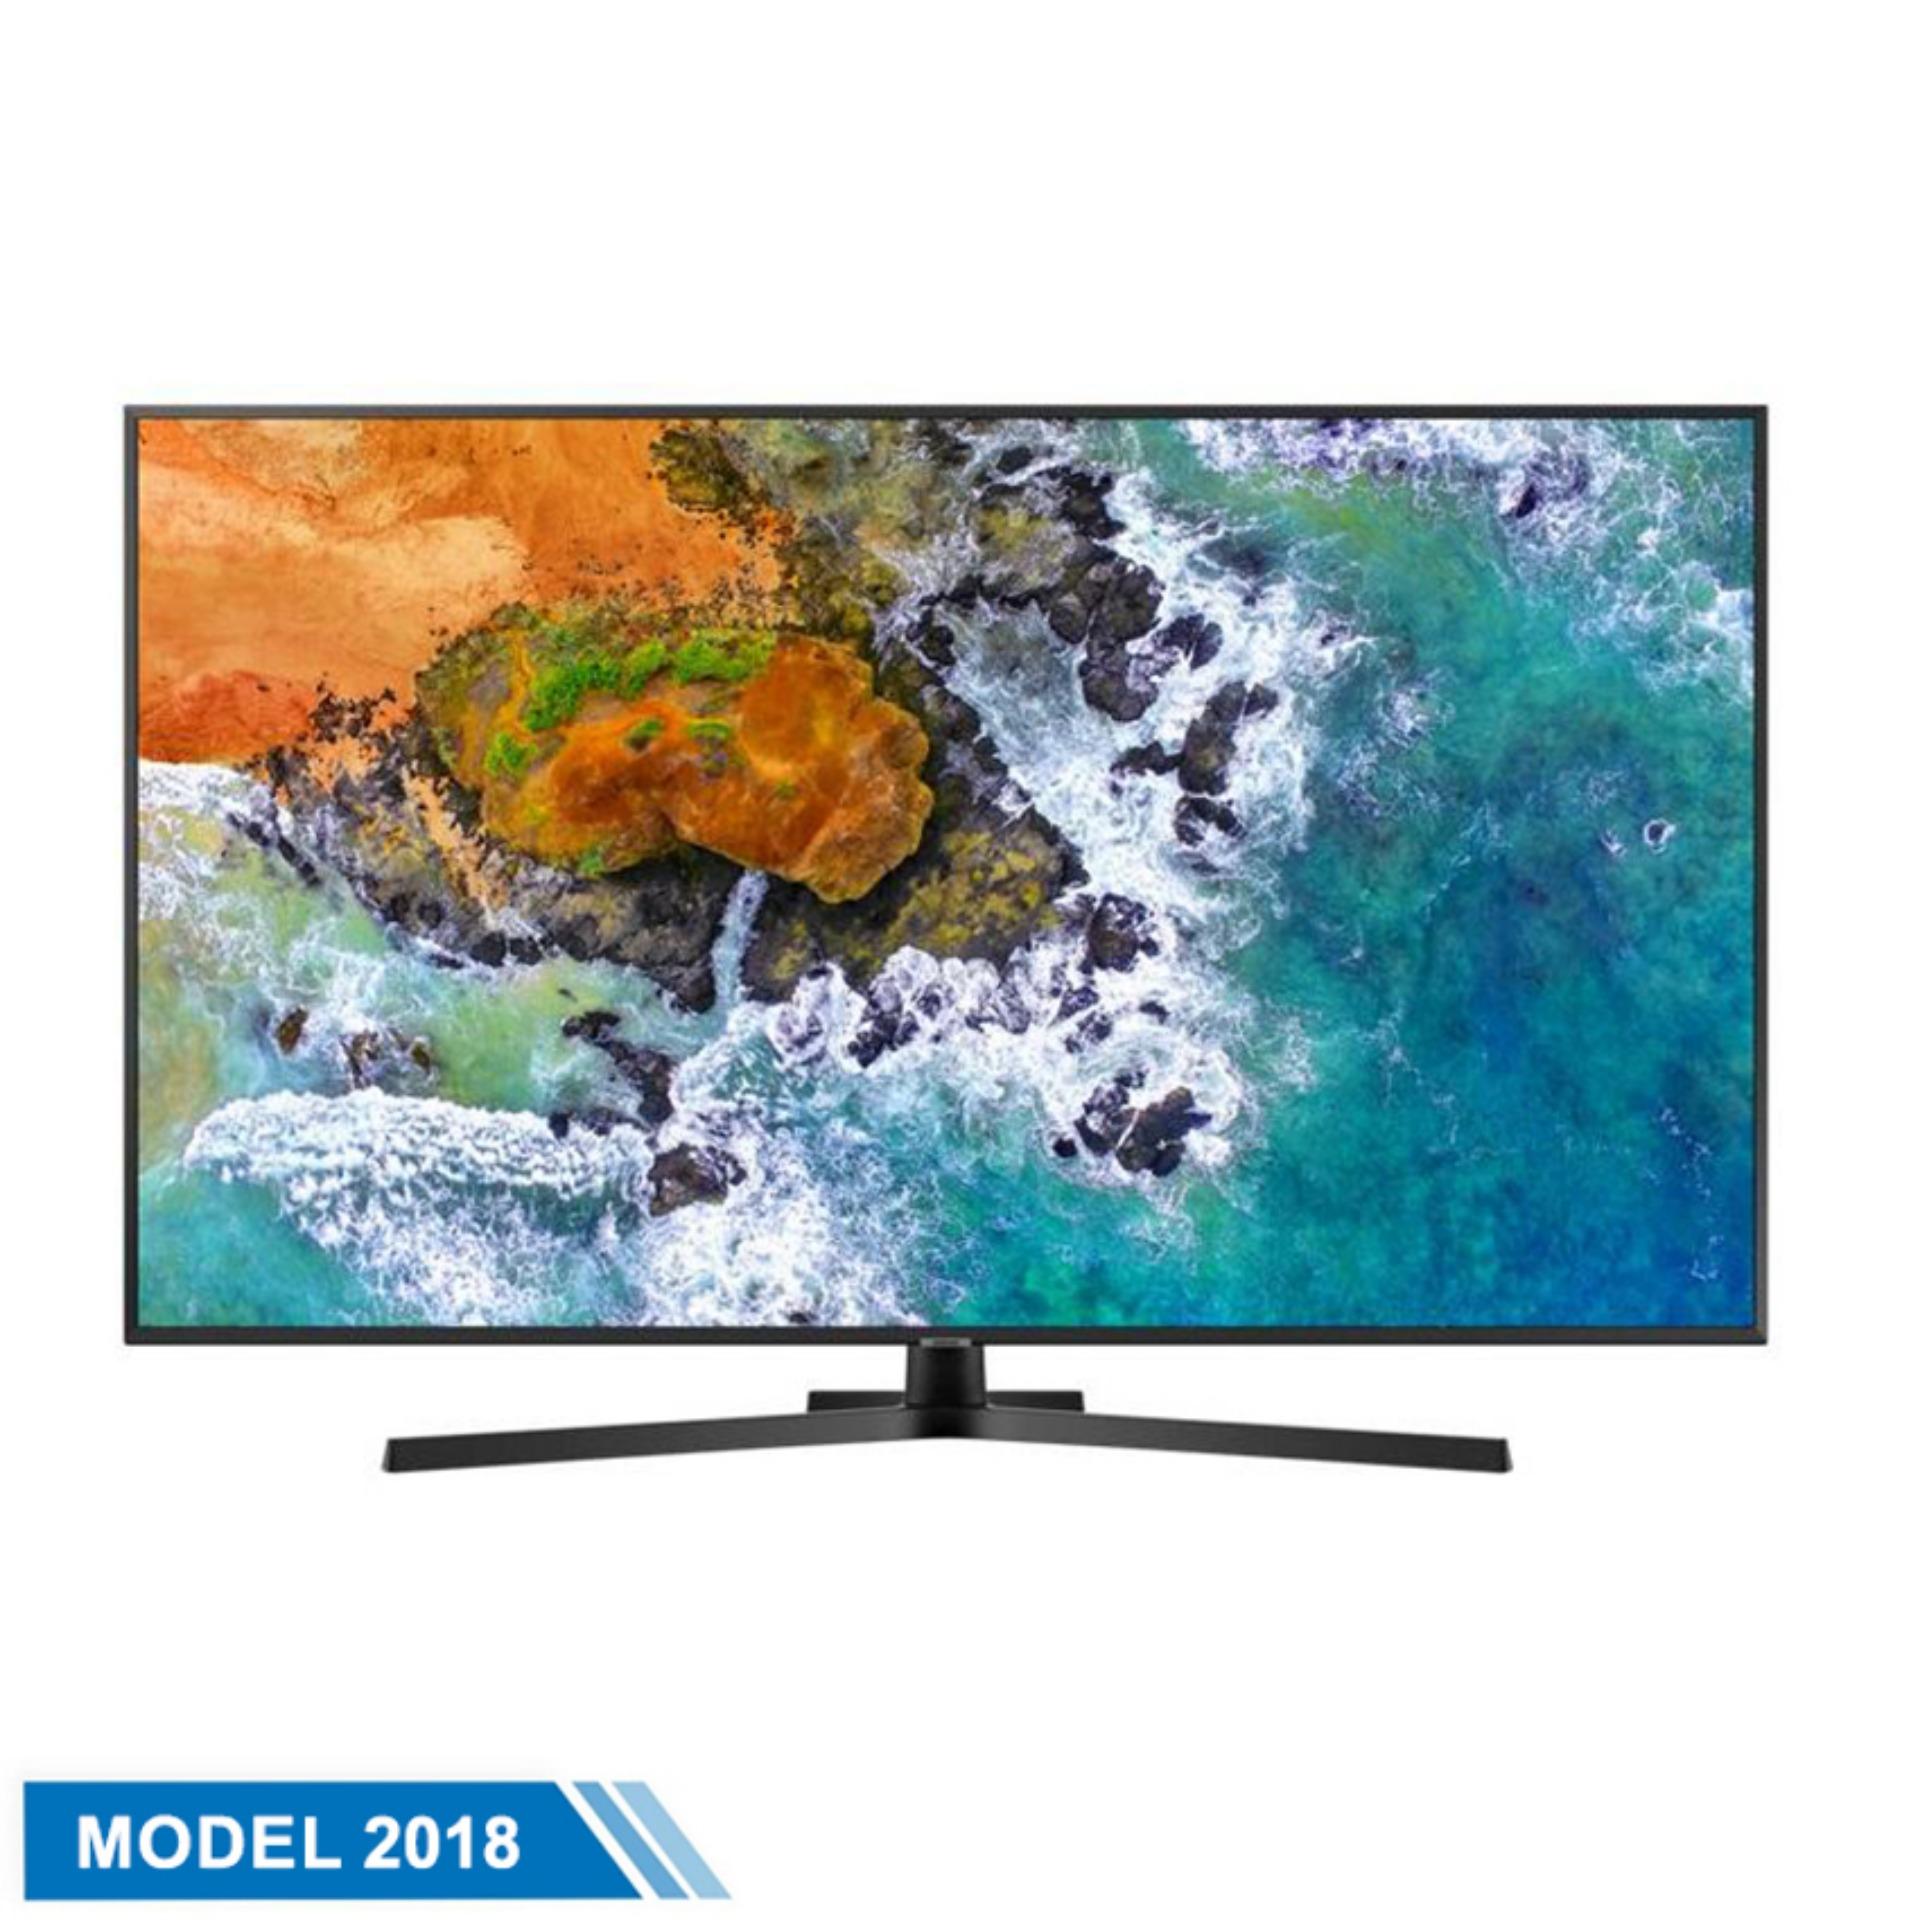 Smart TV Samsung LED 43inch 4K Ultra HD - Model UA43NU7800KXXV (Đen) - Hãng phân phối chính thức